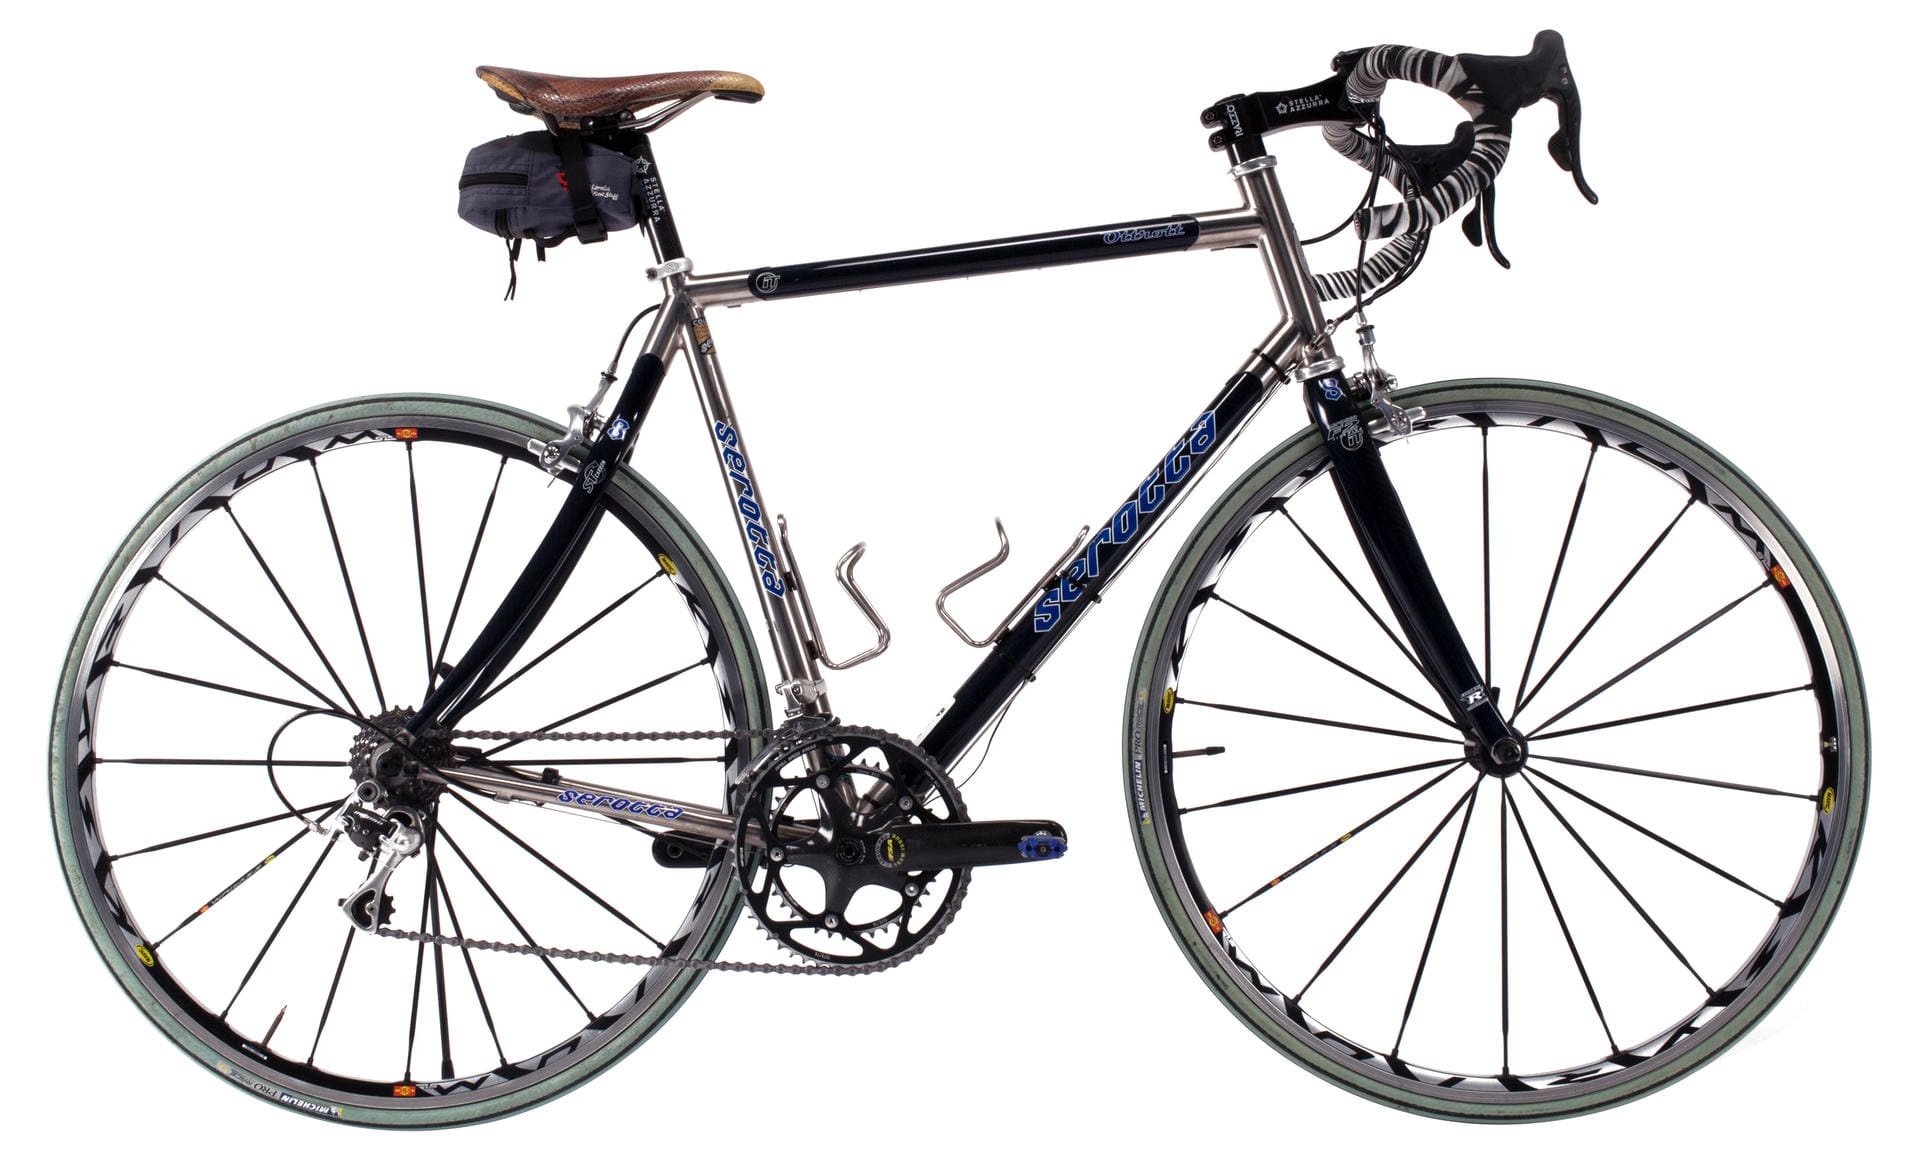 6000 Dollar ist den Sammlern dieses handgemachte Straßen-Bike Serotta "Ottrott" wert.